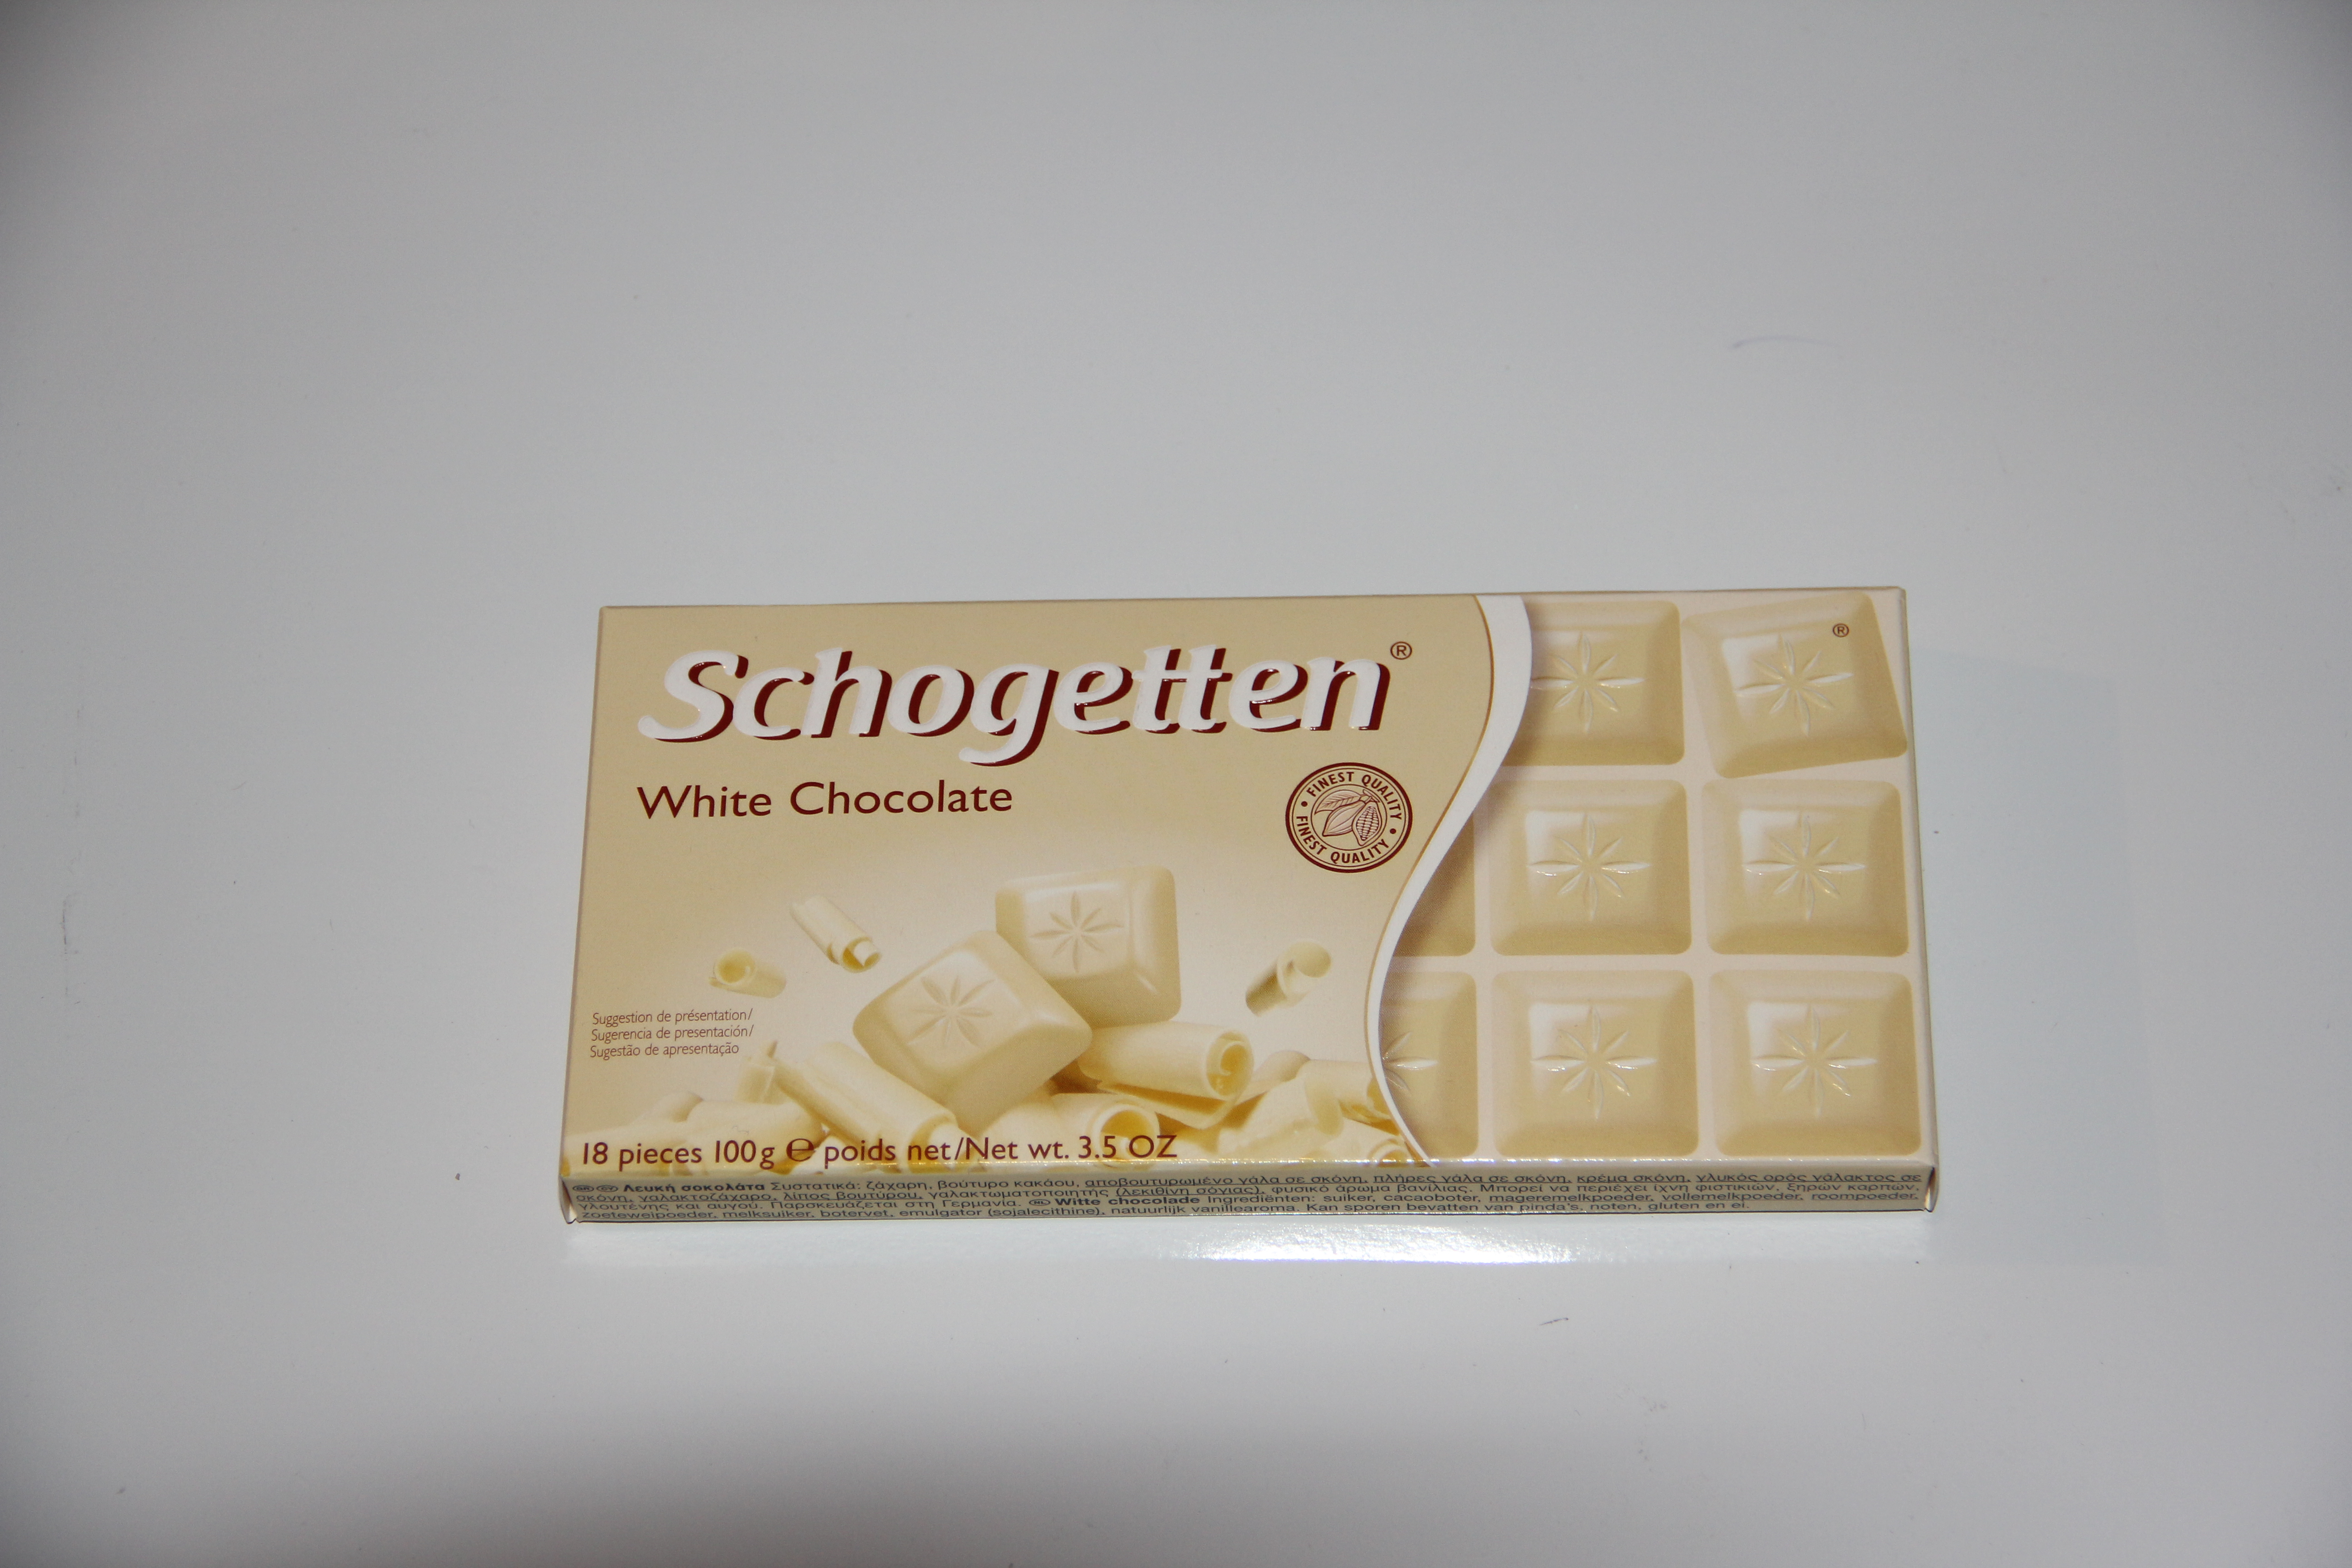 Белый шоколад 100 г. Шоколад Schogetten белый шоколад 100гр *15. Шогеттен 100 гр белый*15 шт. Шогеттен 100 гр Трилоджия*15 шт. Белый шоколад из Германии.